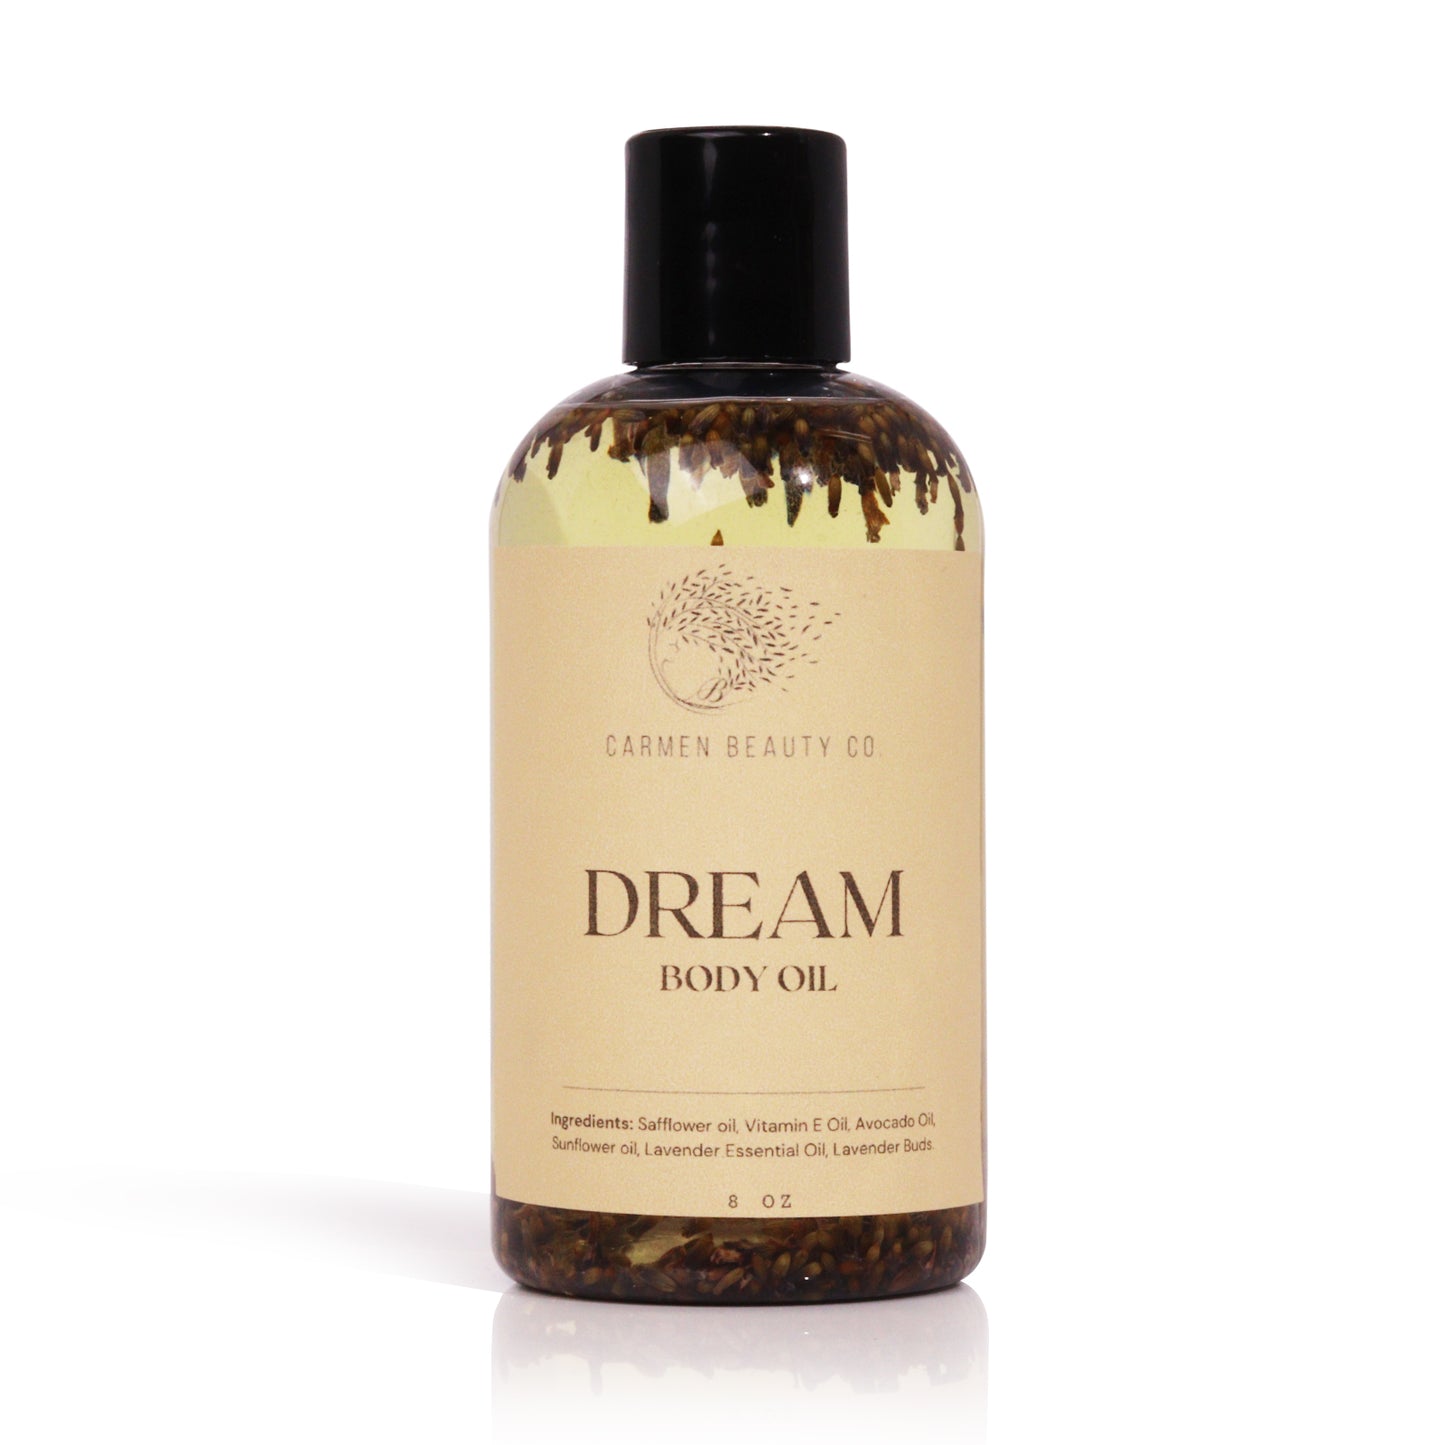 Dream Body Oil